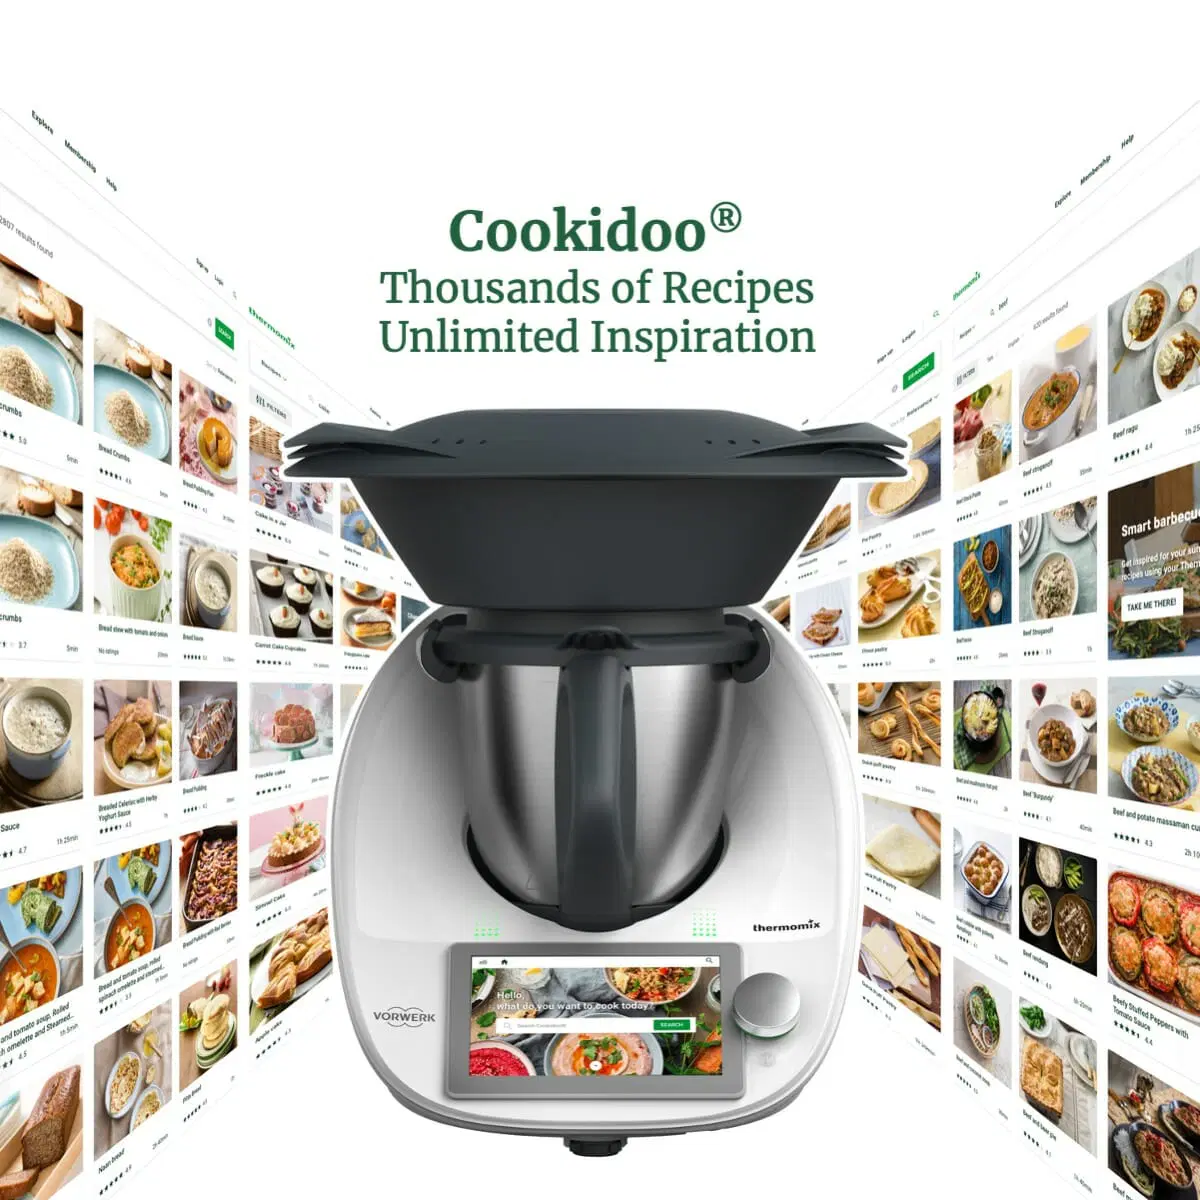 Graines de pavot moulues - Cookidoo® – the official Thermomix® recipe  platform